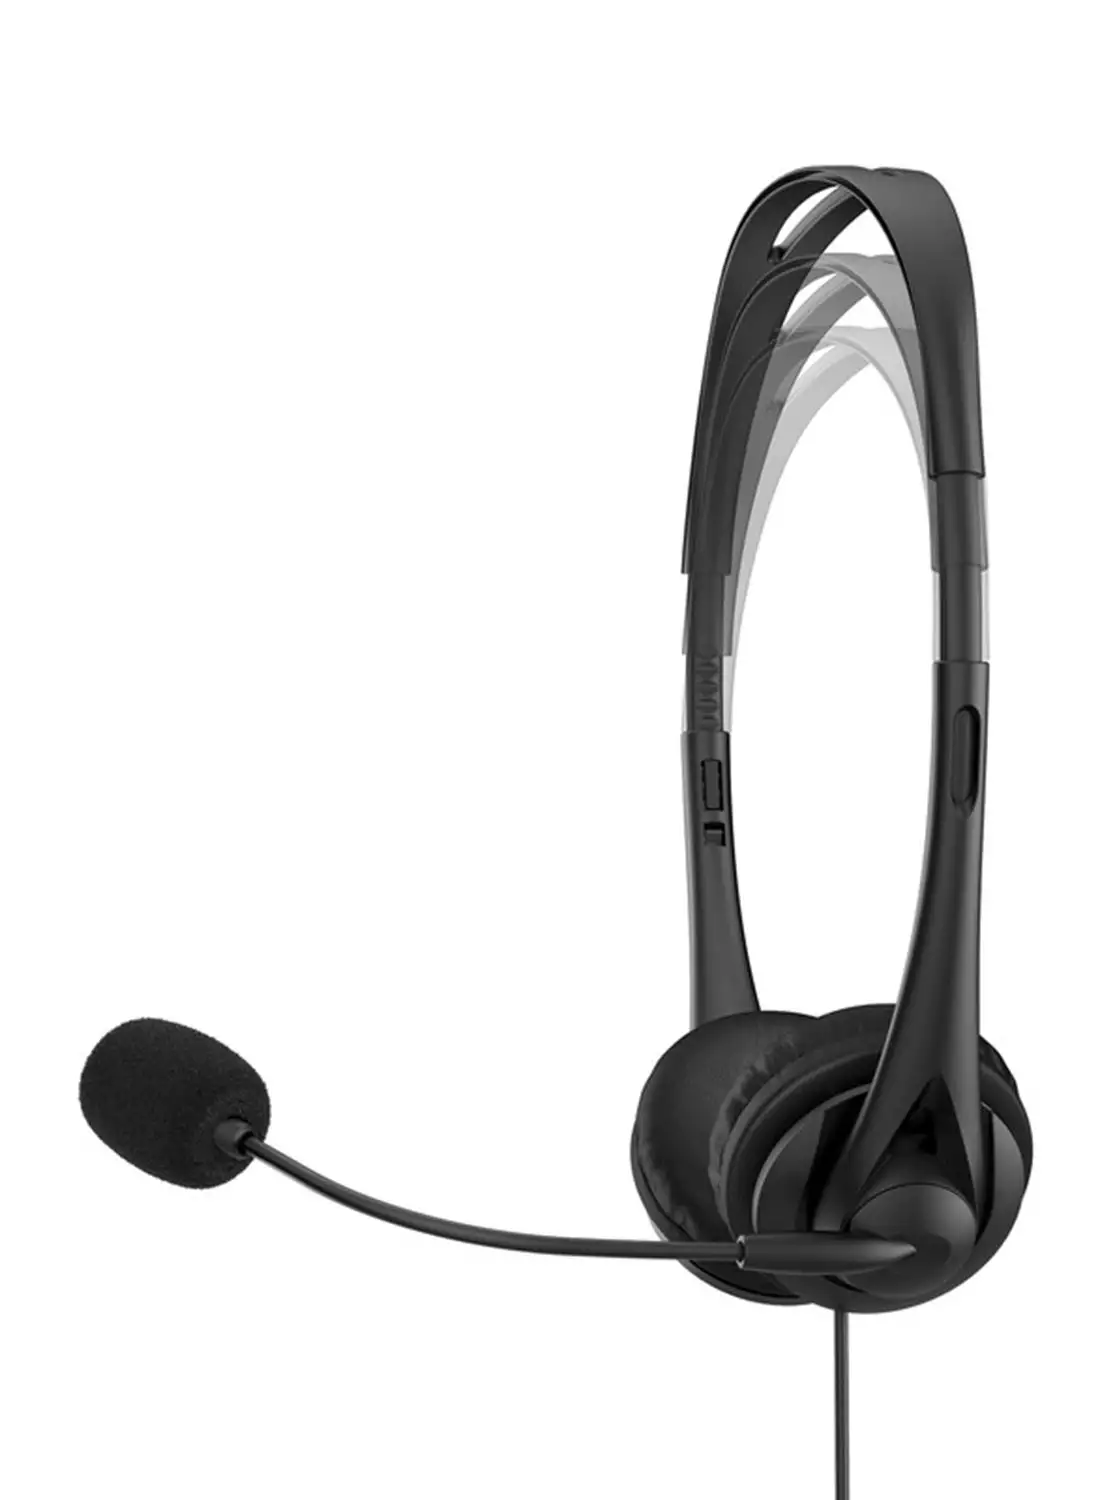 سماعة رأس استريو سلكية HP مقاس 3.5 مم باللون الأسود الأوروبي